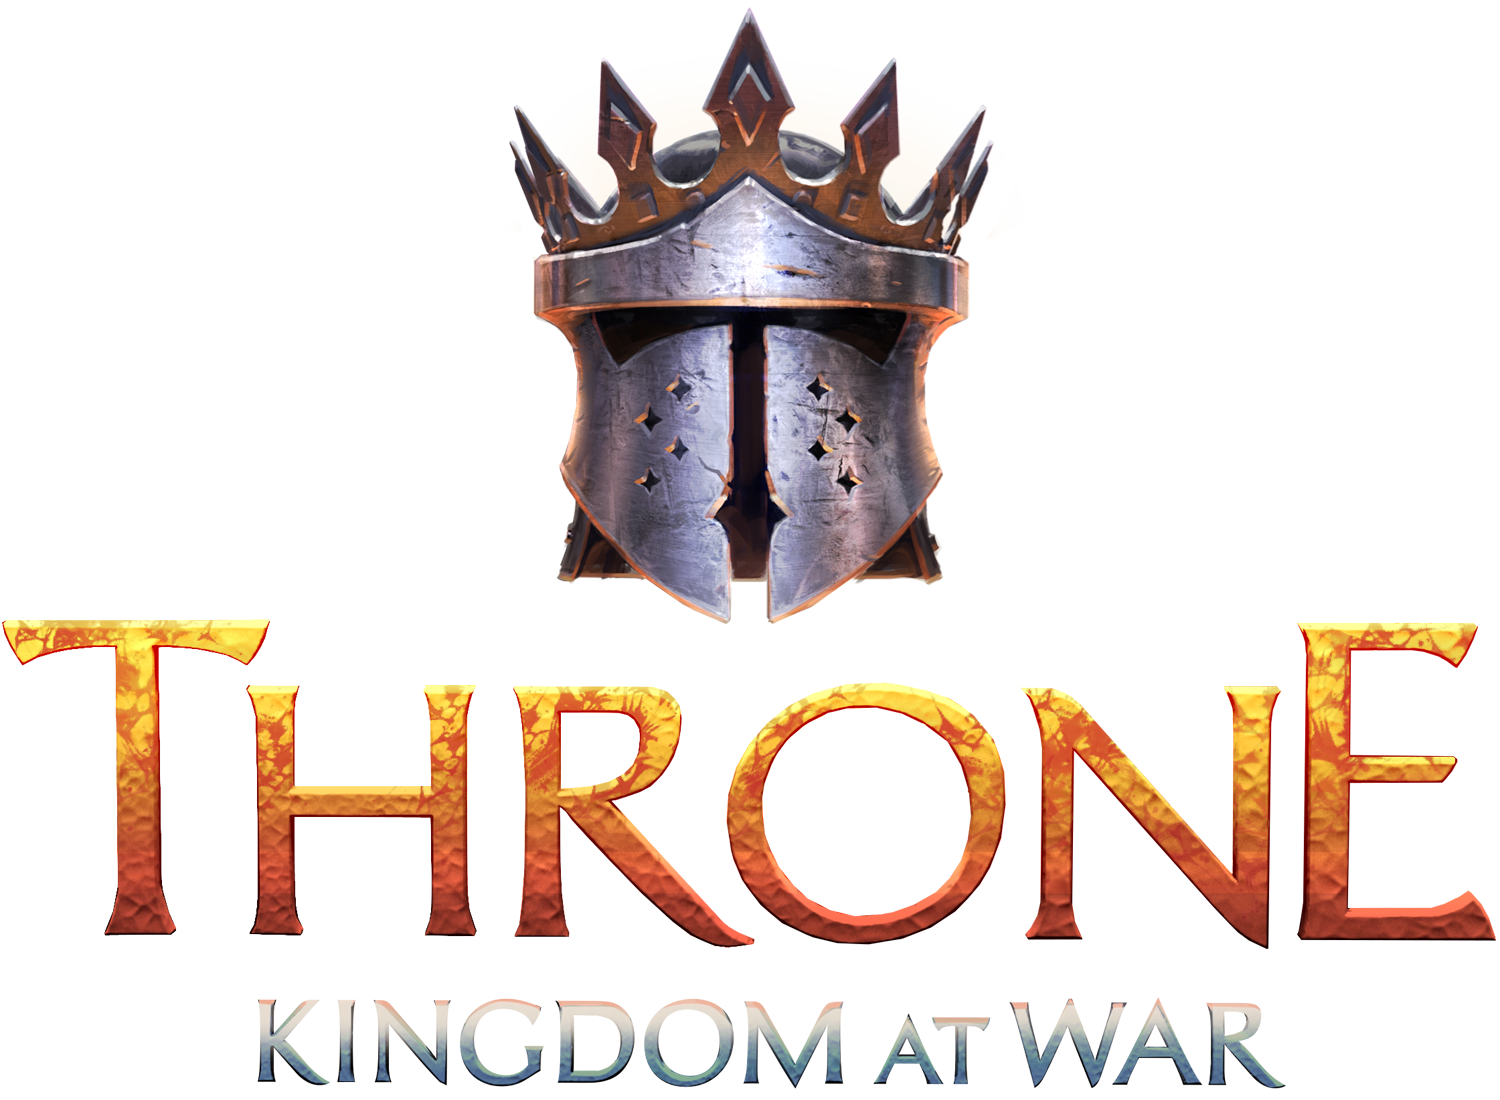 press-kit-throne-kingdom-at-war-1